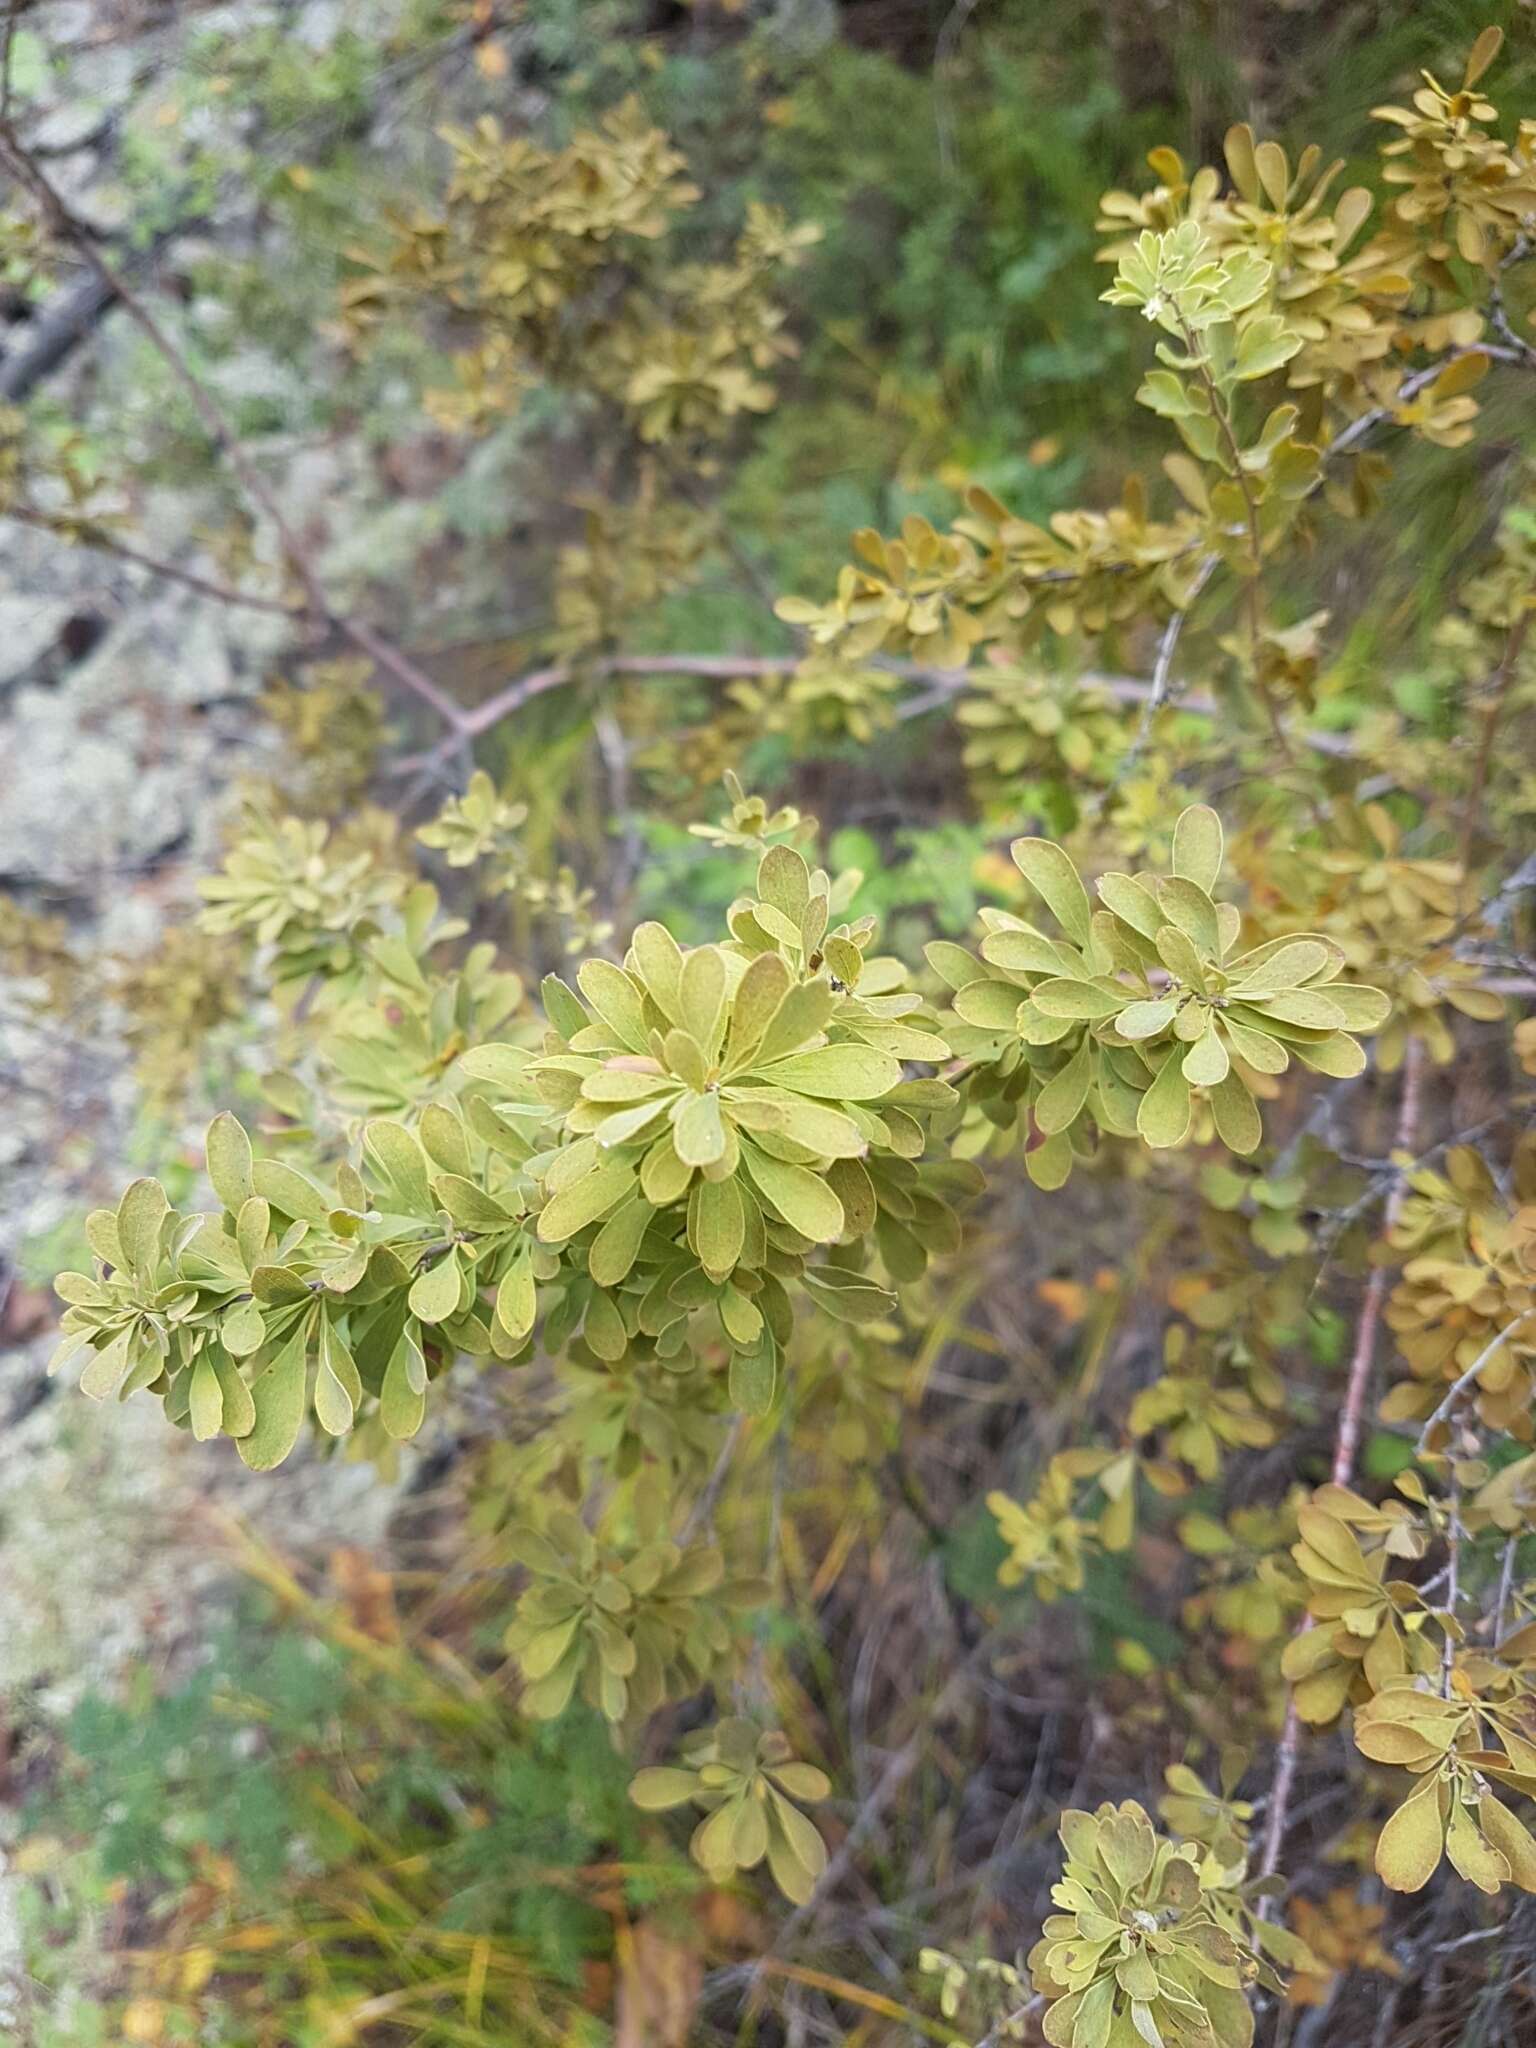 Image of Spiraea aquilegifolia Pall.